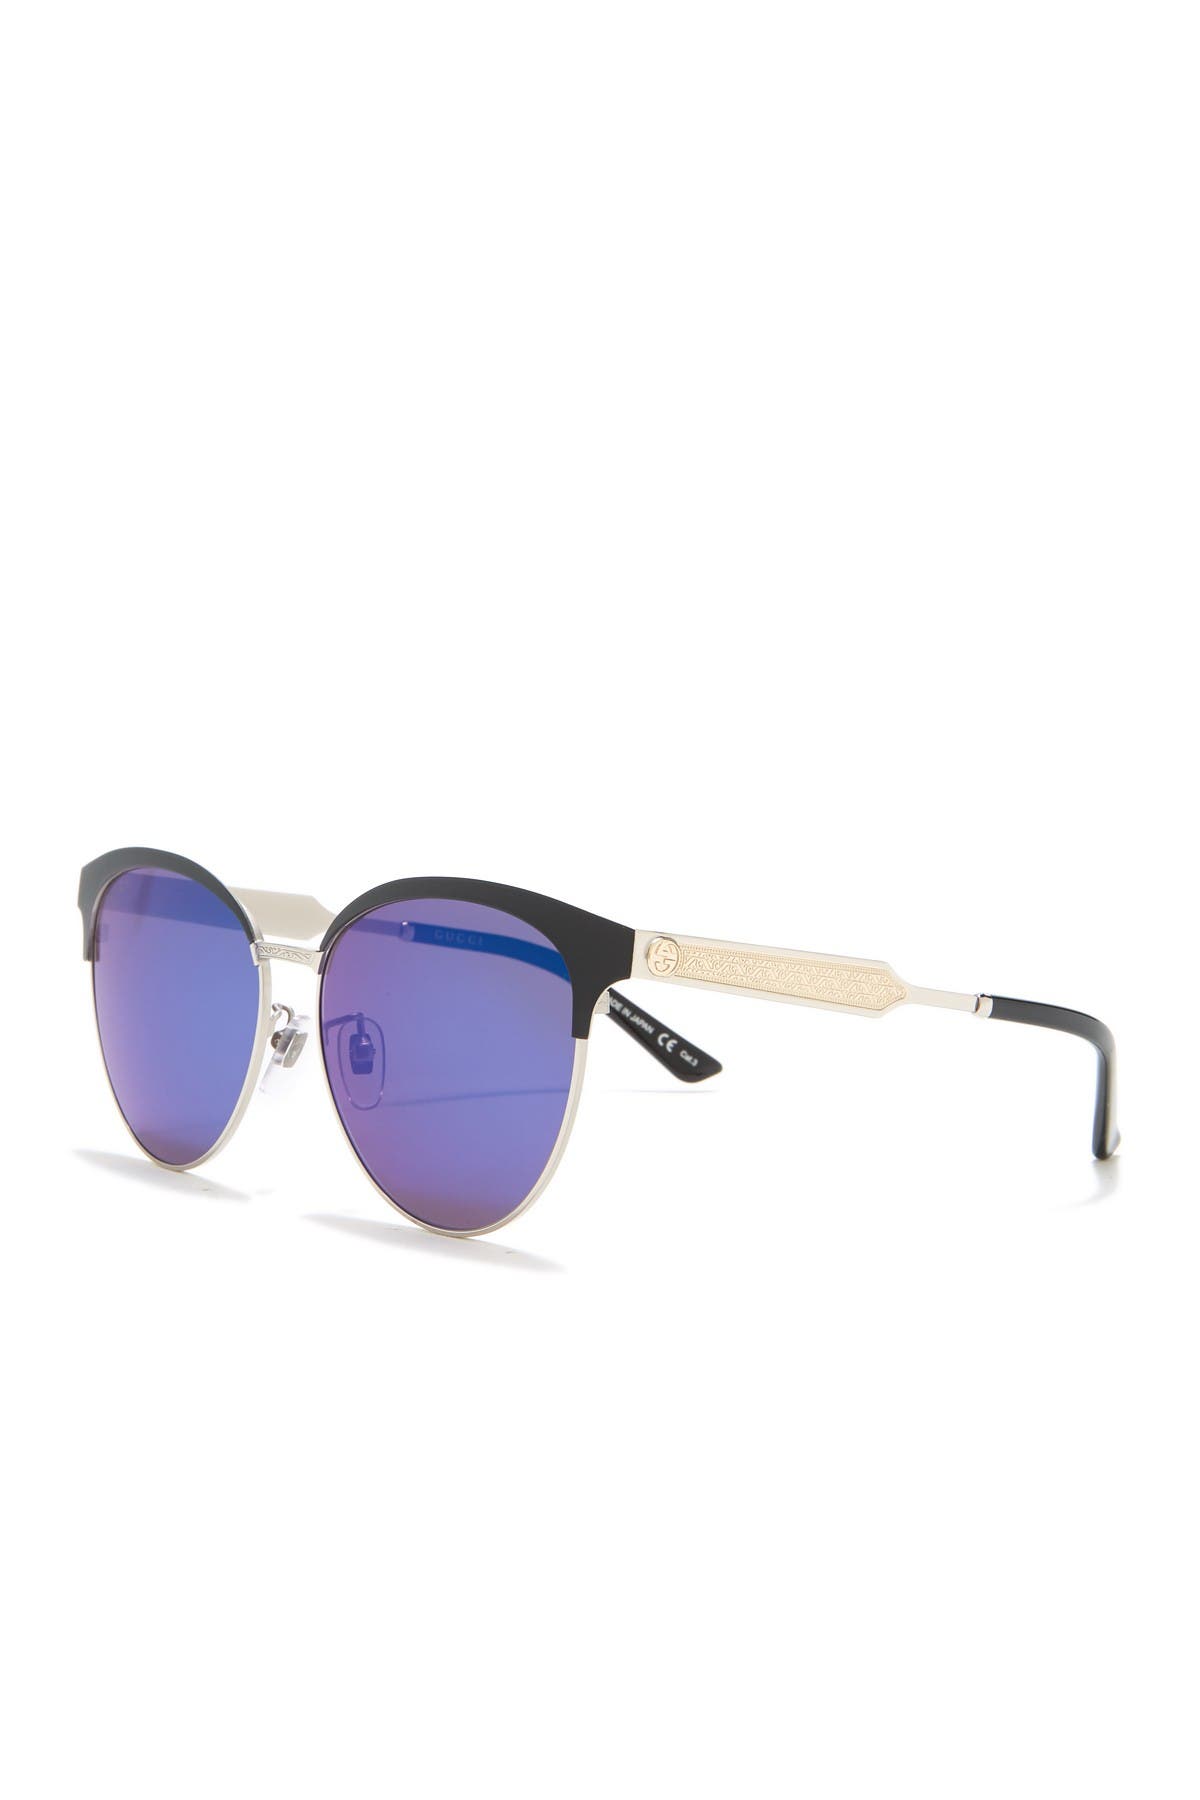 gucci cat eye sunglasses 58mm